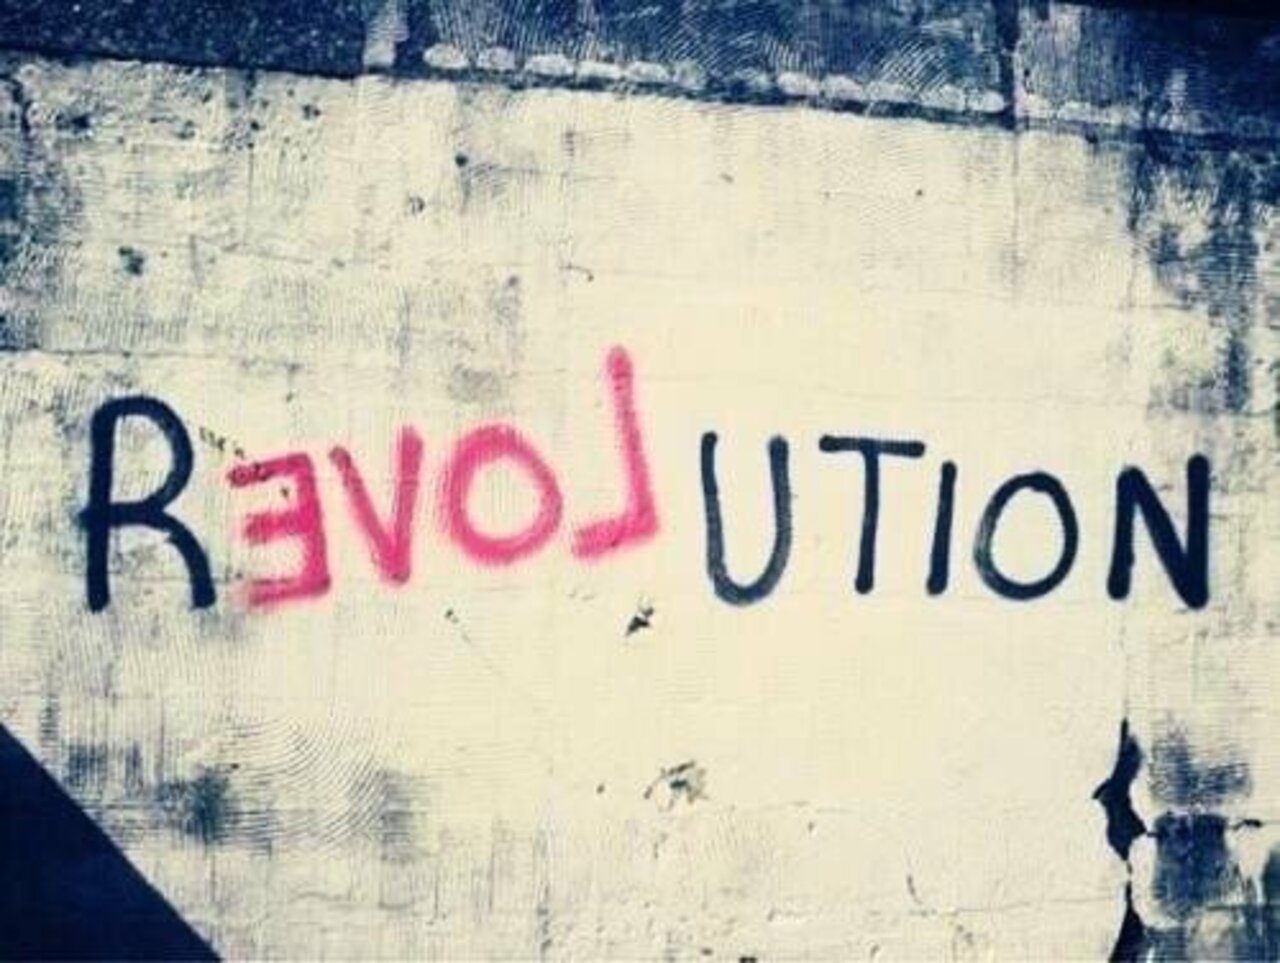 #Love Revolution – #Creative #StreetArt – Be ▲rtist – Be ▲rt Magazine https://beartistbeart.com/2016/12/02/love-revolution-creative-streetart/?utm_campaign=crowdfire&utm_content=crowdfire&utm_medium=social&utm_source=twitter https://t.co/Z4xqmE6CEx